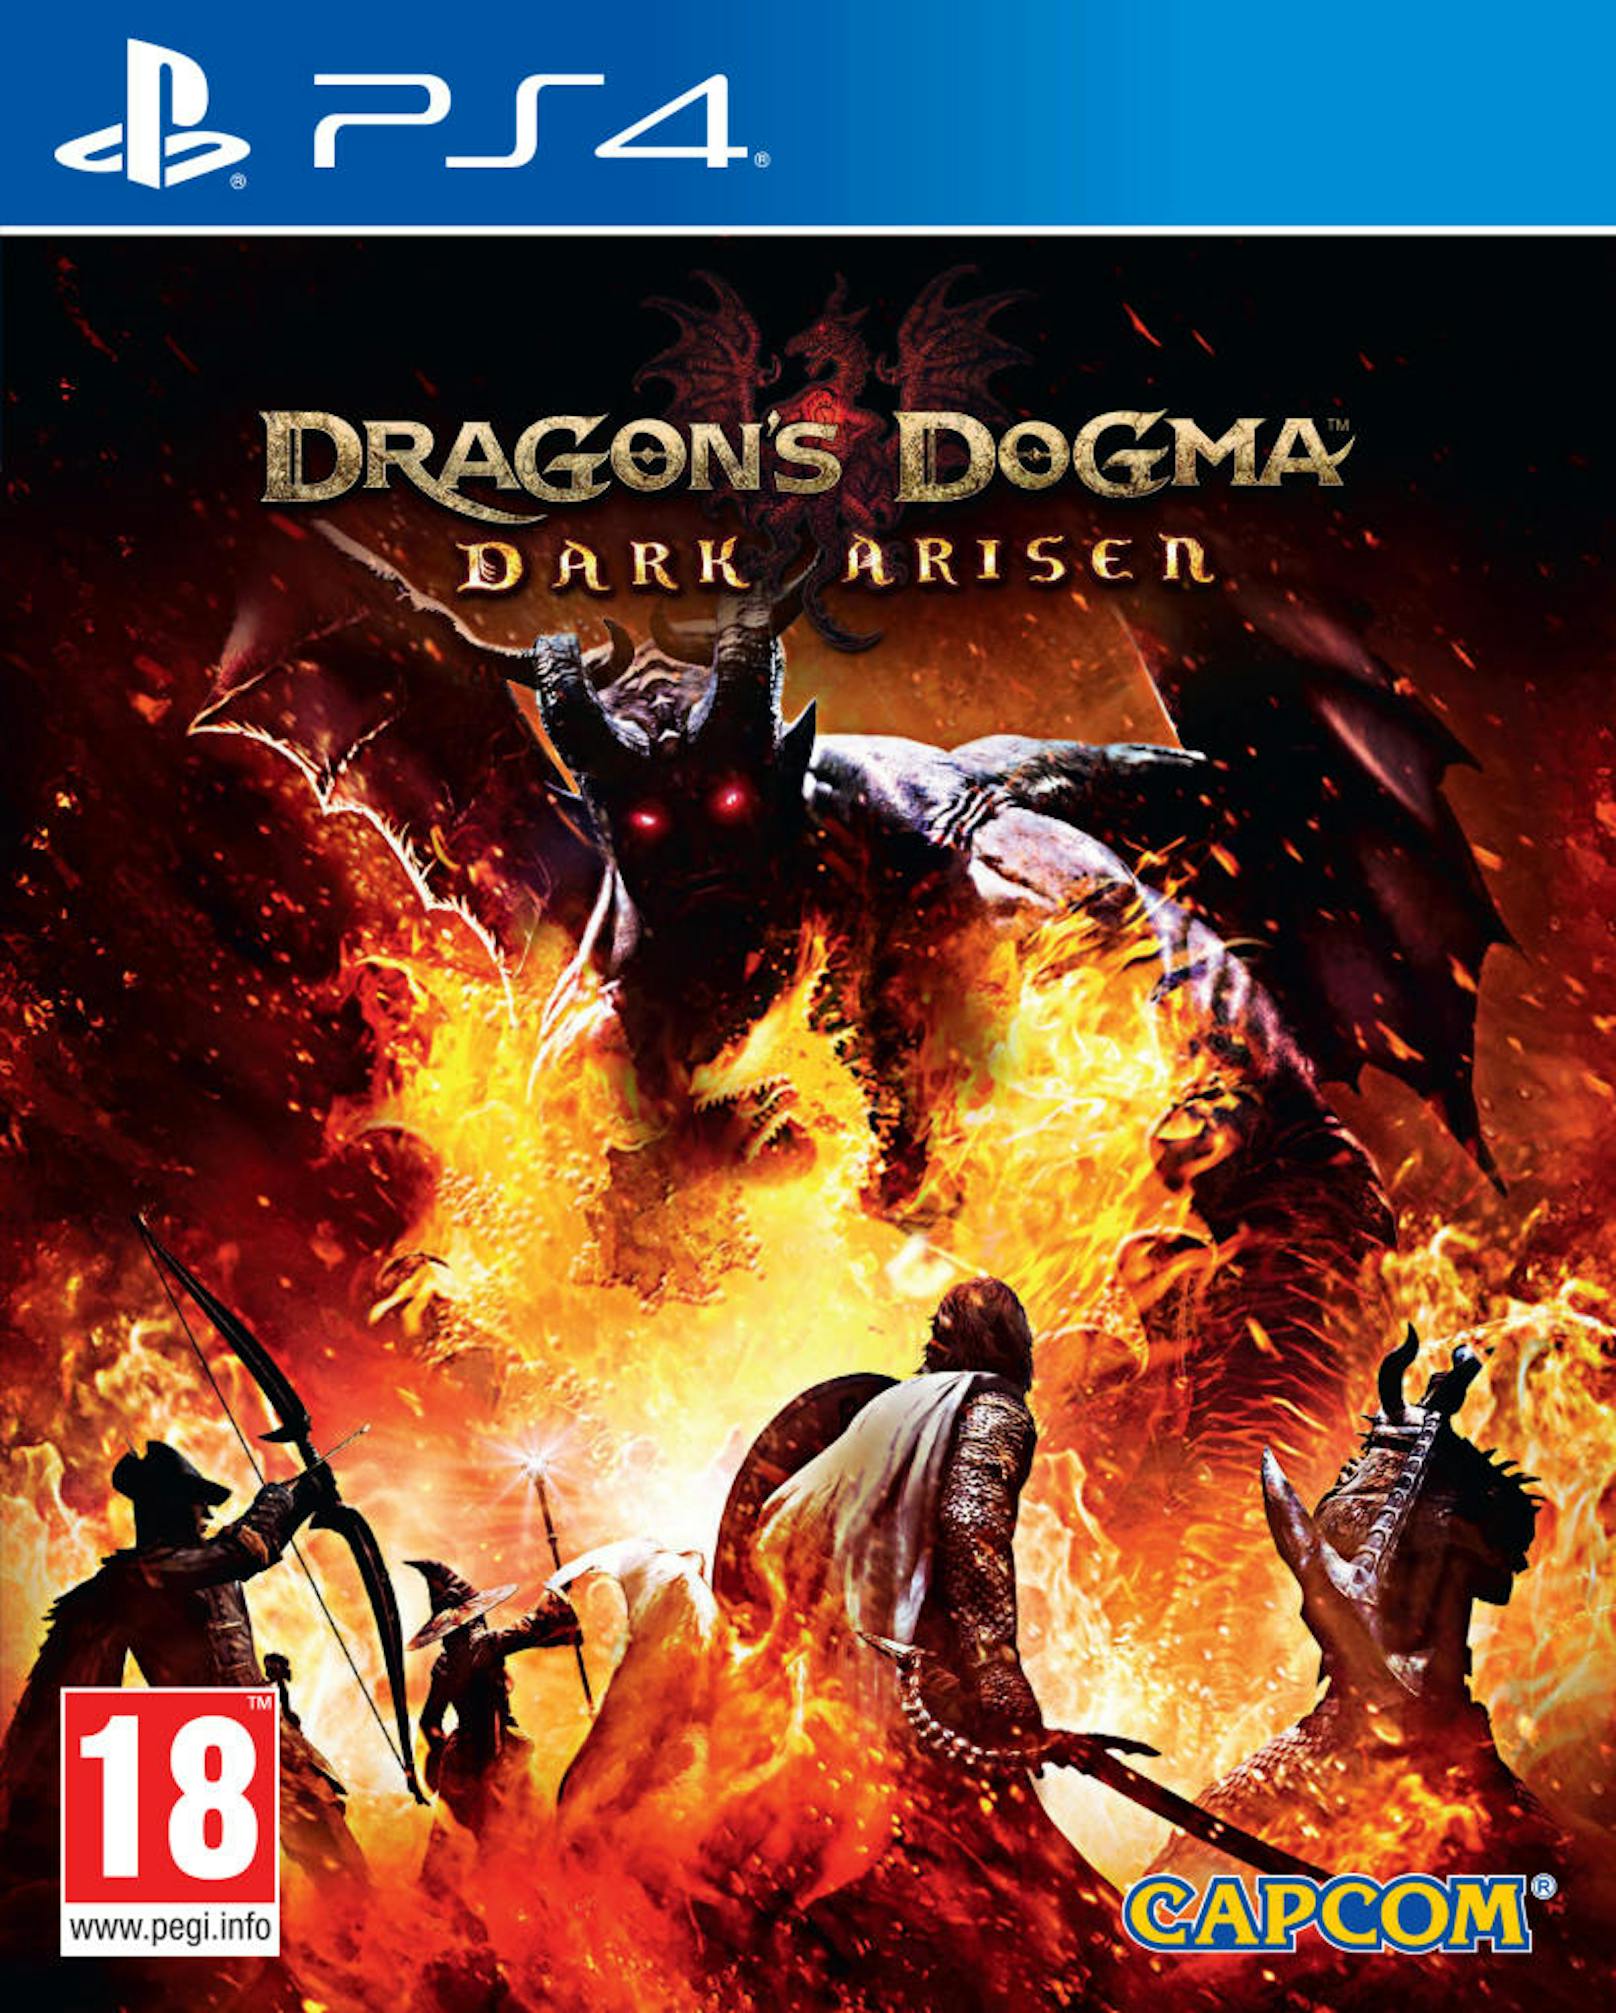 Wer in Skyrim schon jeden Stein zweimal umgedreht hat, der kann durchaus einen Abstecher nach Gransys wagen - zumal die HD-Version von "Dragon's Dogma: Dark Arisen" nur 25 Euro kostet.